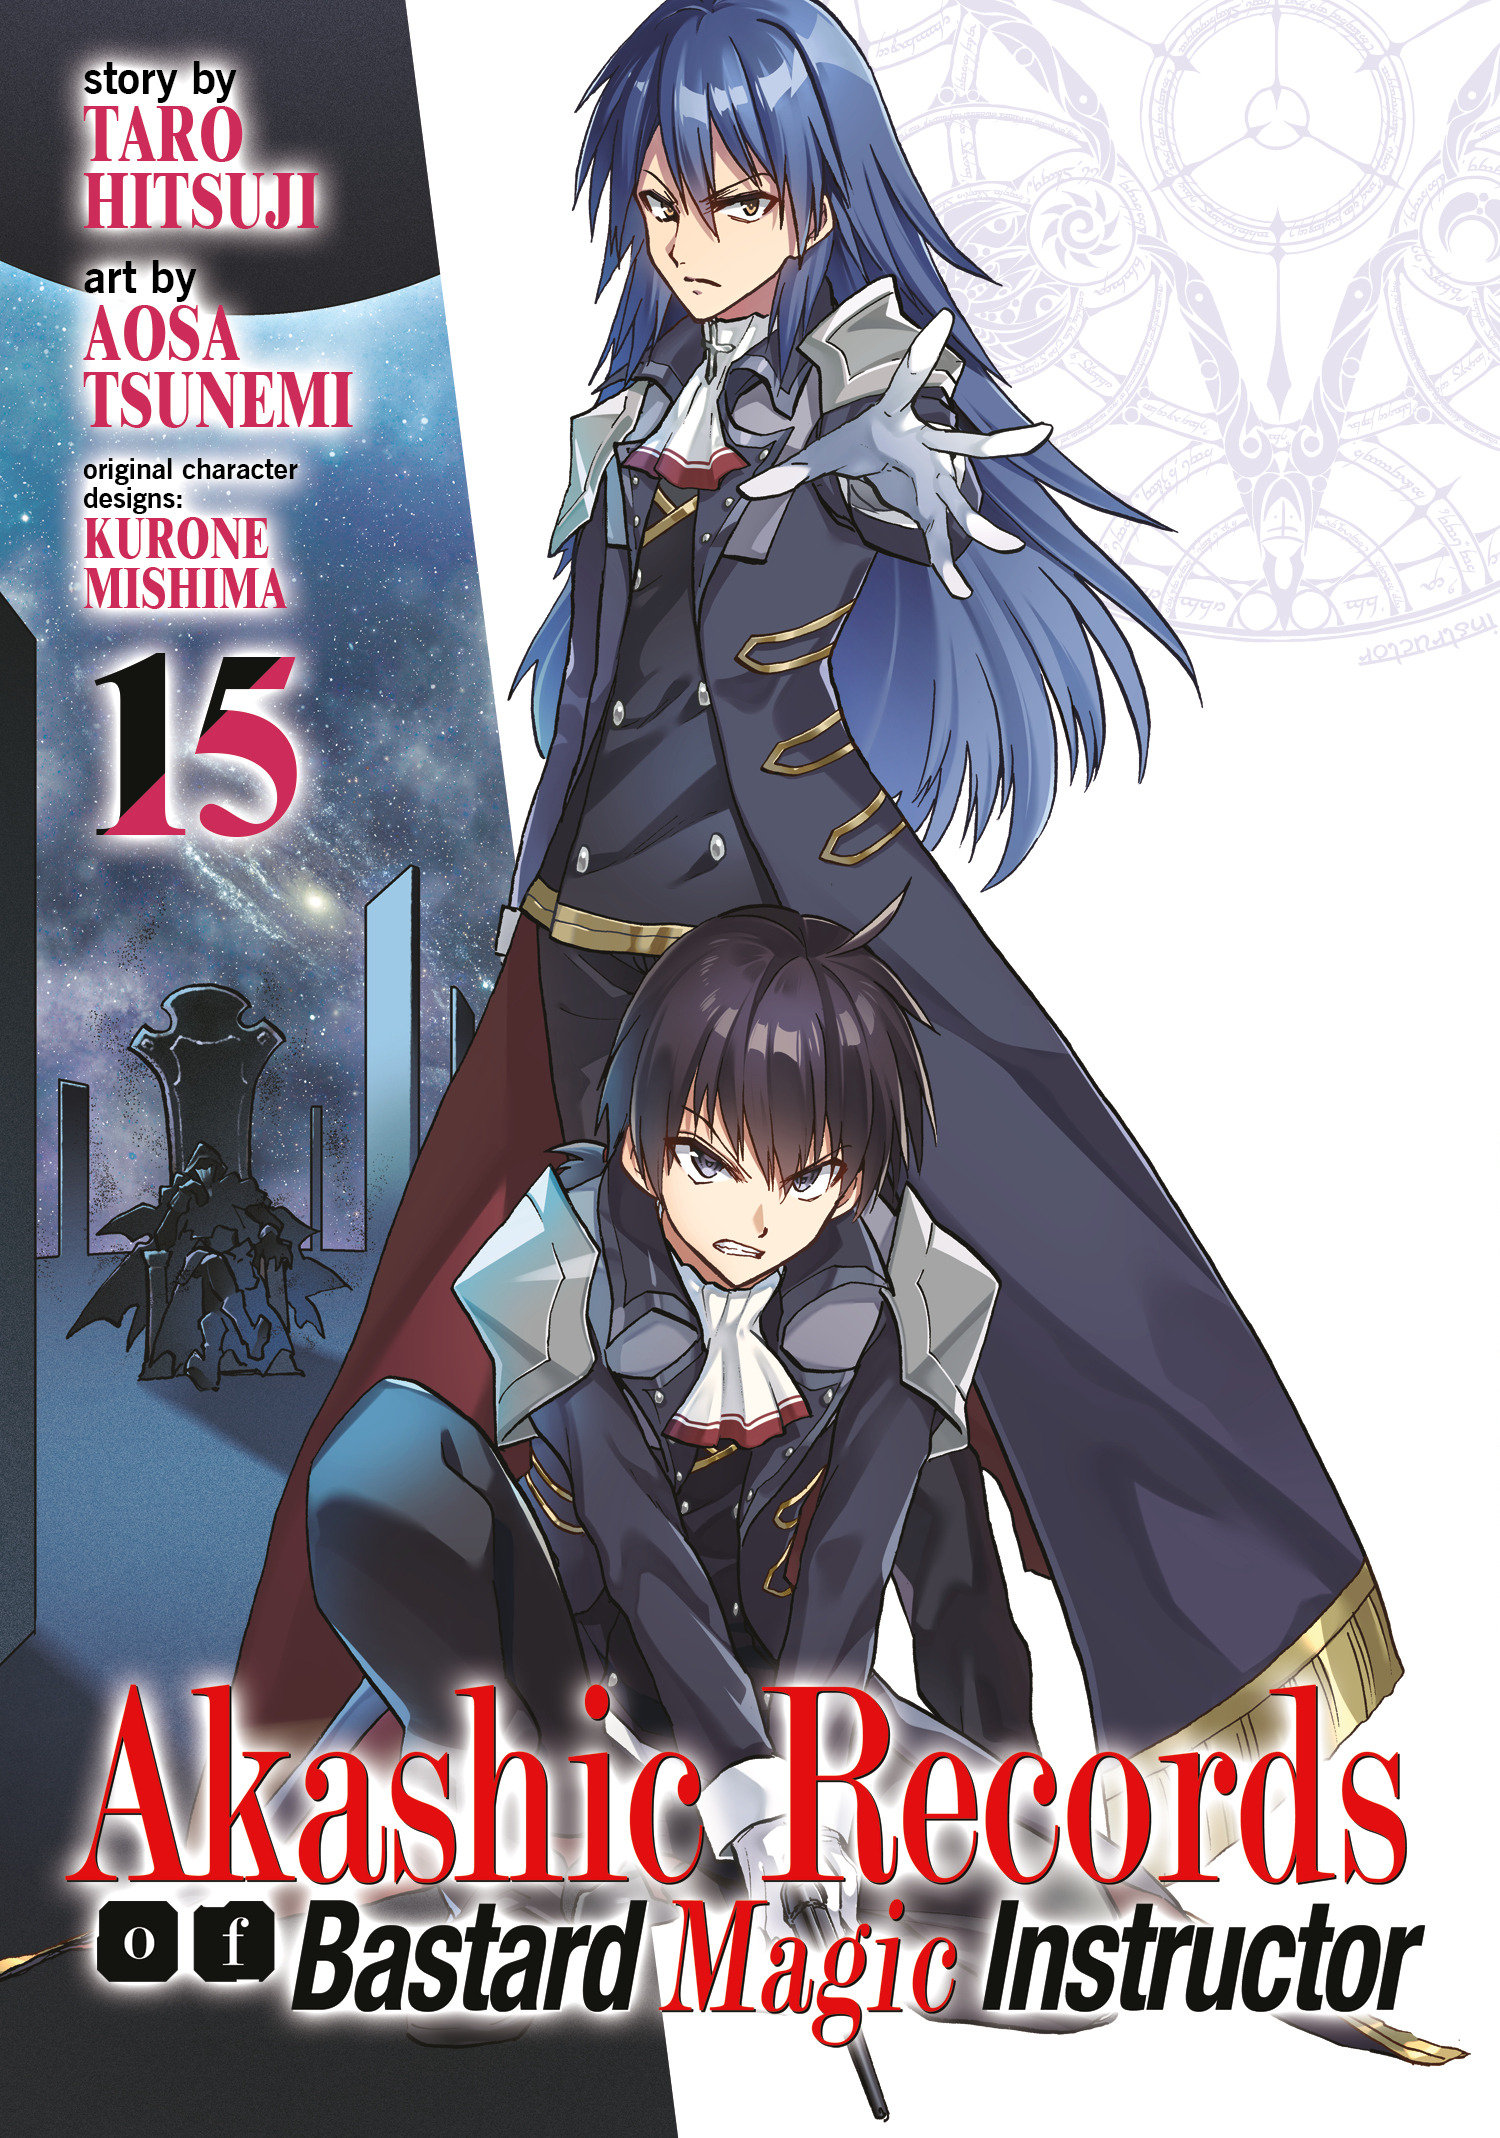 Akashic Records of Bastard Magical Instructor Manga Volume 15